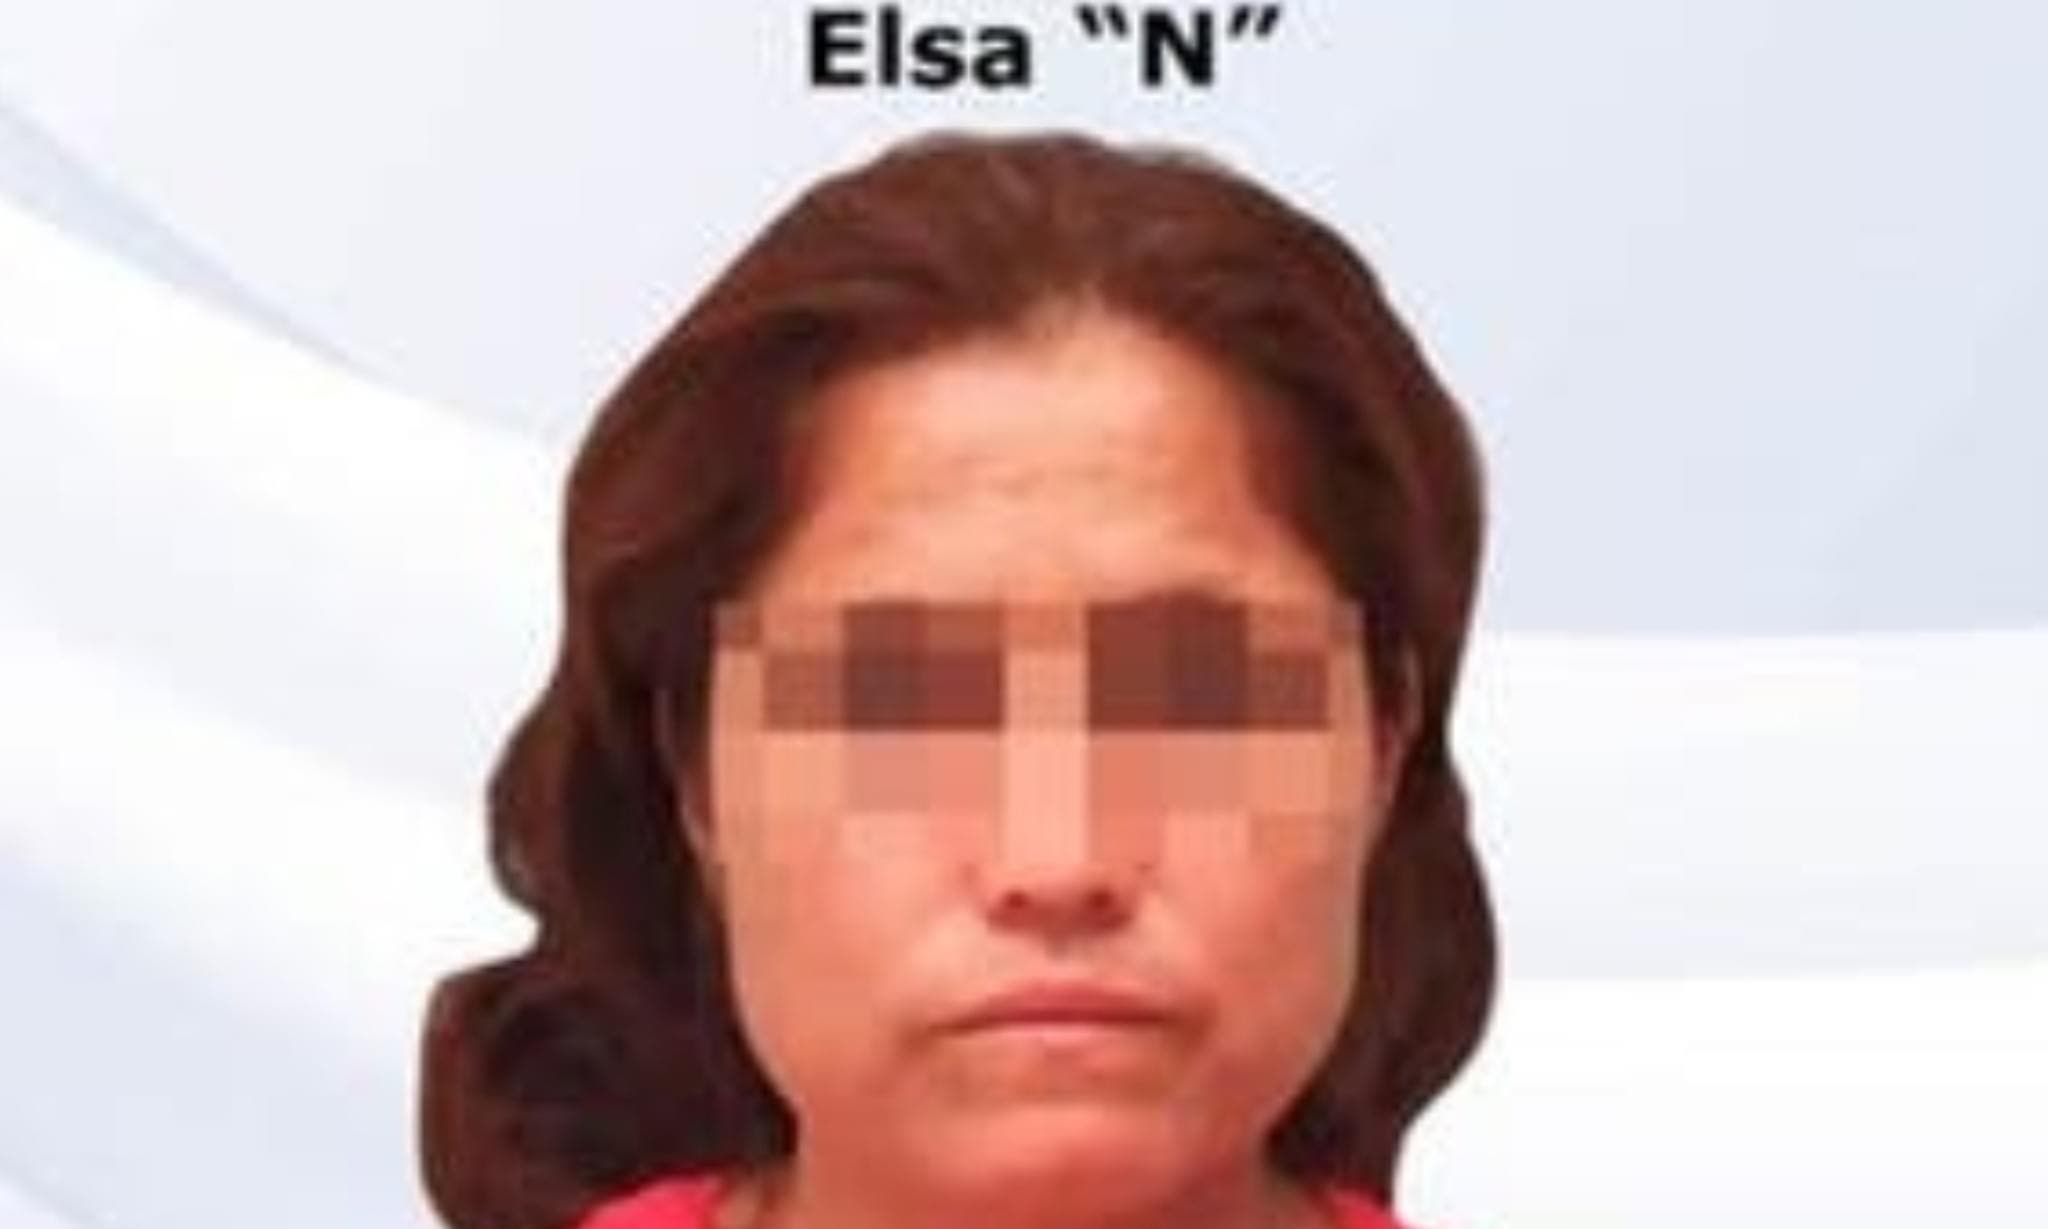 DE TERROR Elisa abusa de su sobrino de SOLO 10 años, su esposo la descubre y la entrega a la policía